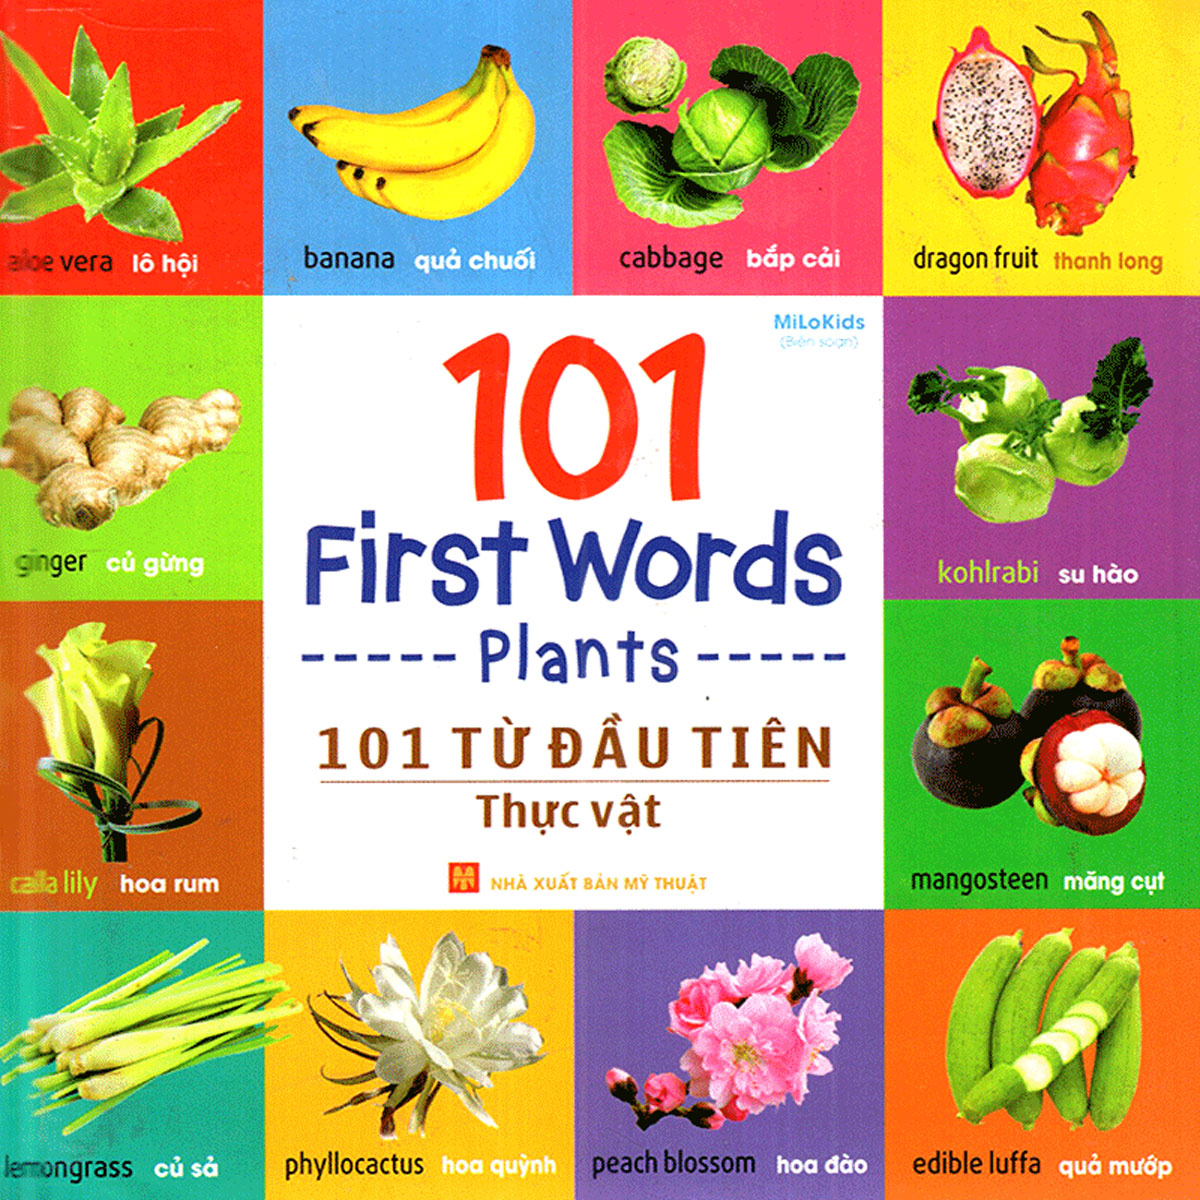 101 First Words - Plants (101 Từ Đầu Tiên - Thực Vật)